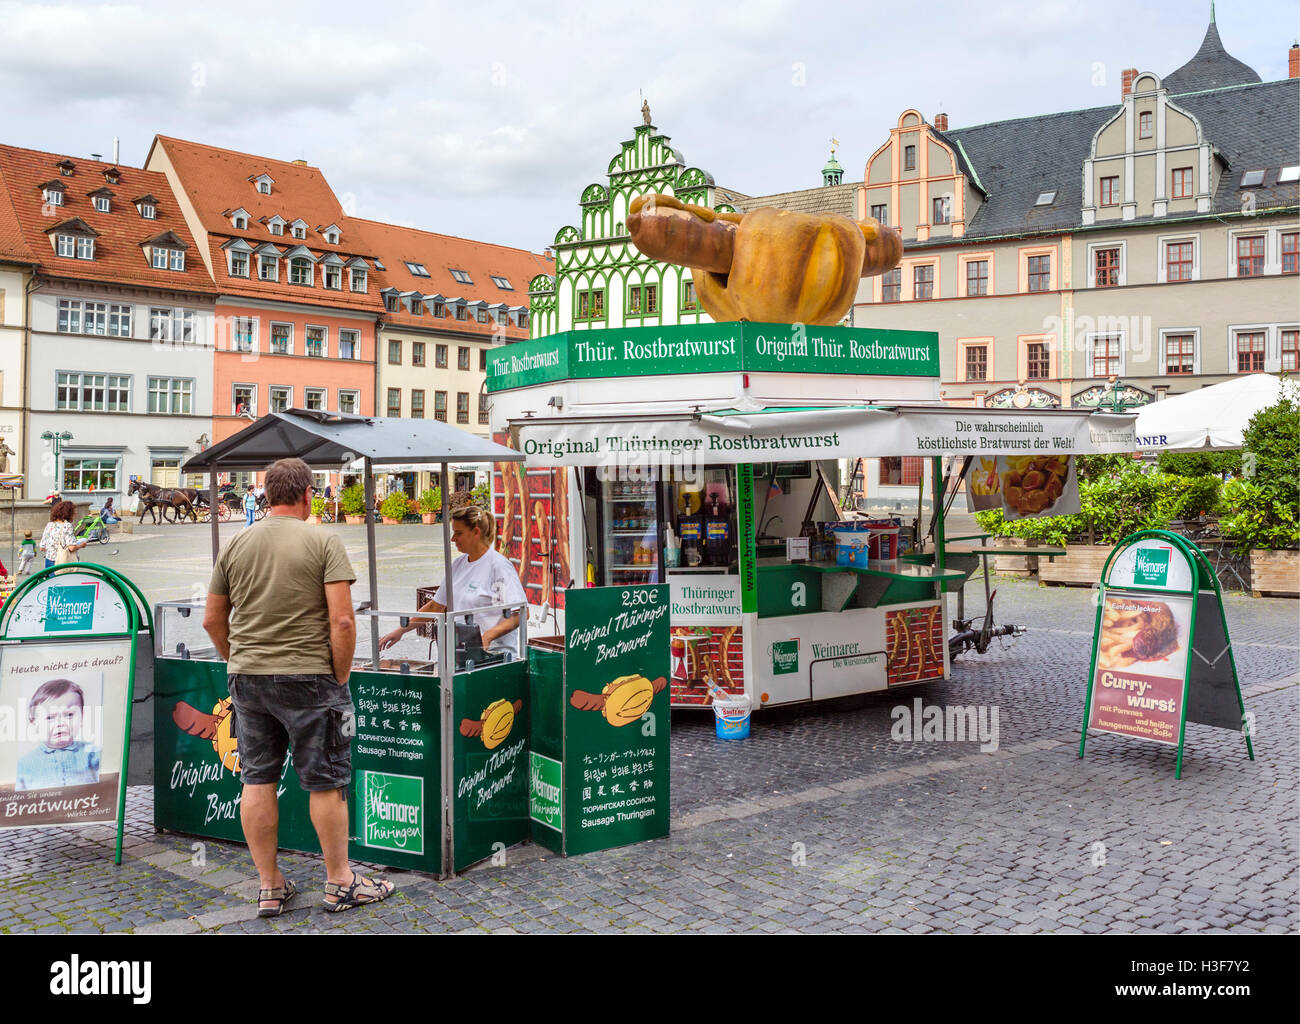 Stallo originale di vendita Thüringer Rostbratwurst in Piazza del Mercato (Markt), Weimar, Turingia, Germania Foto Stock